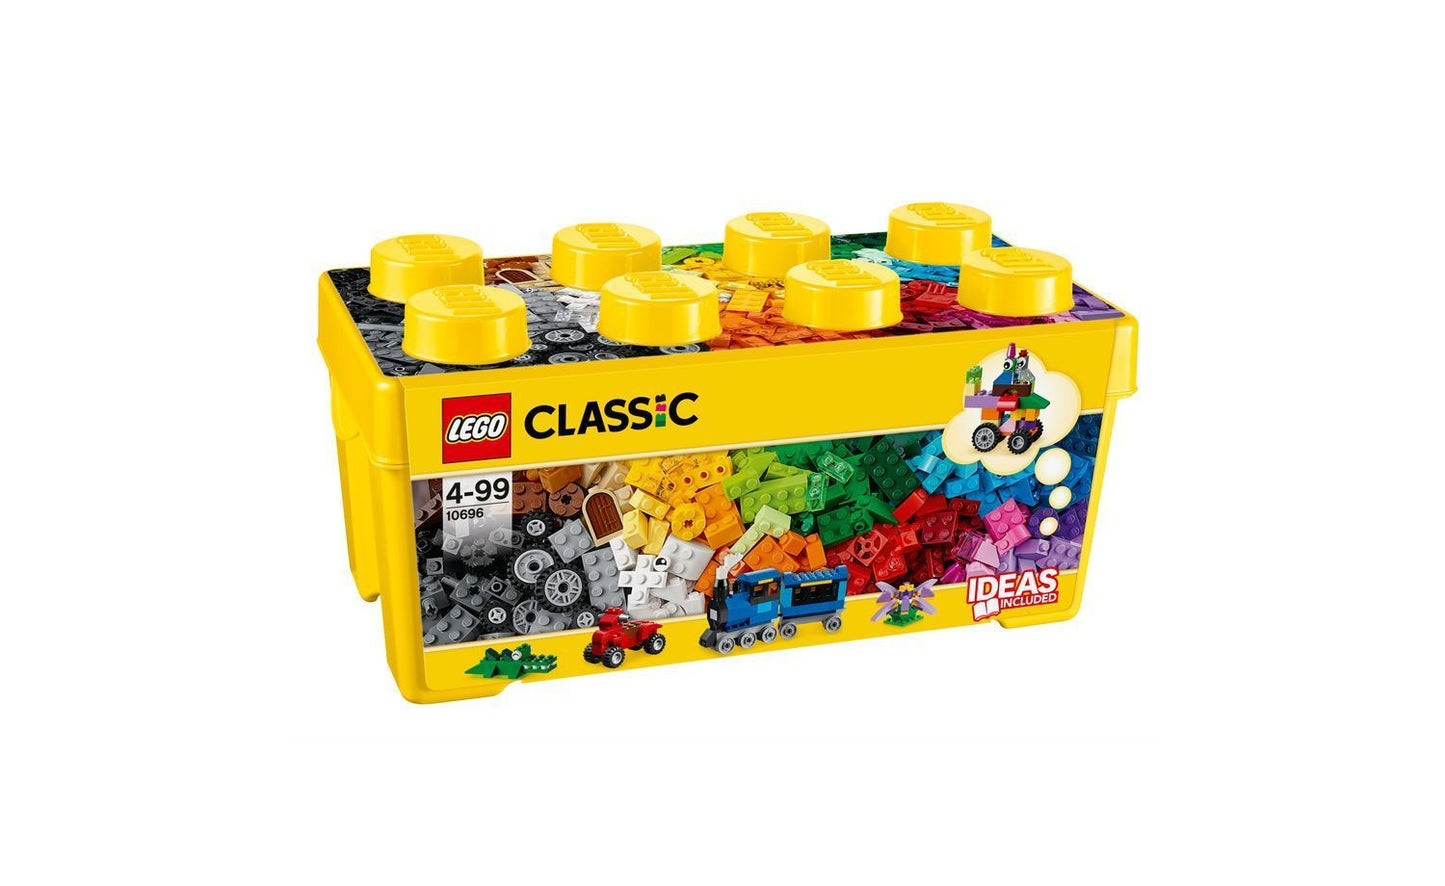 Lego Classic - Medium Creative Brick Box